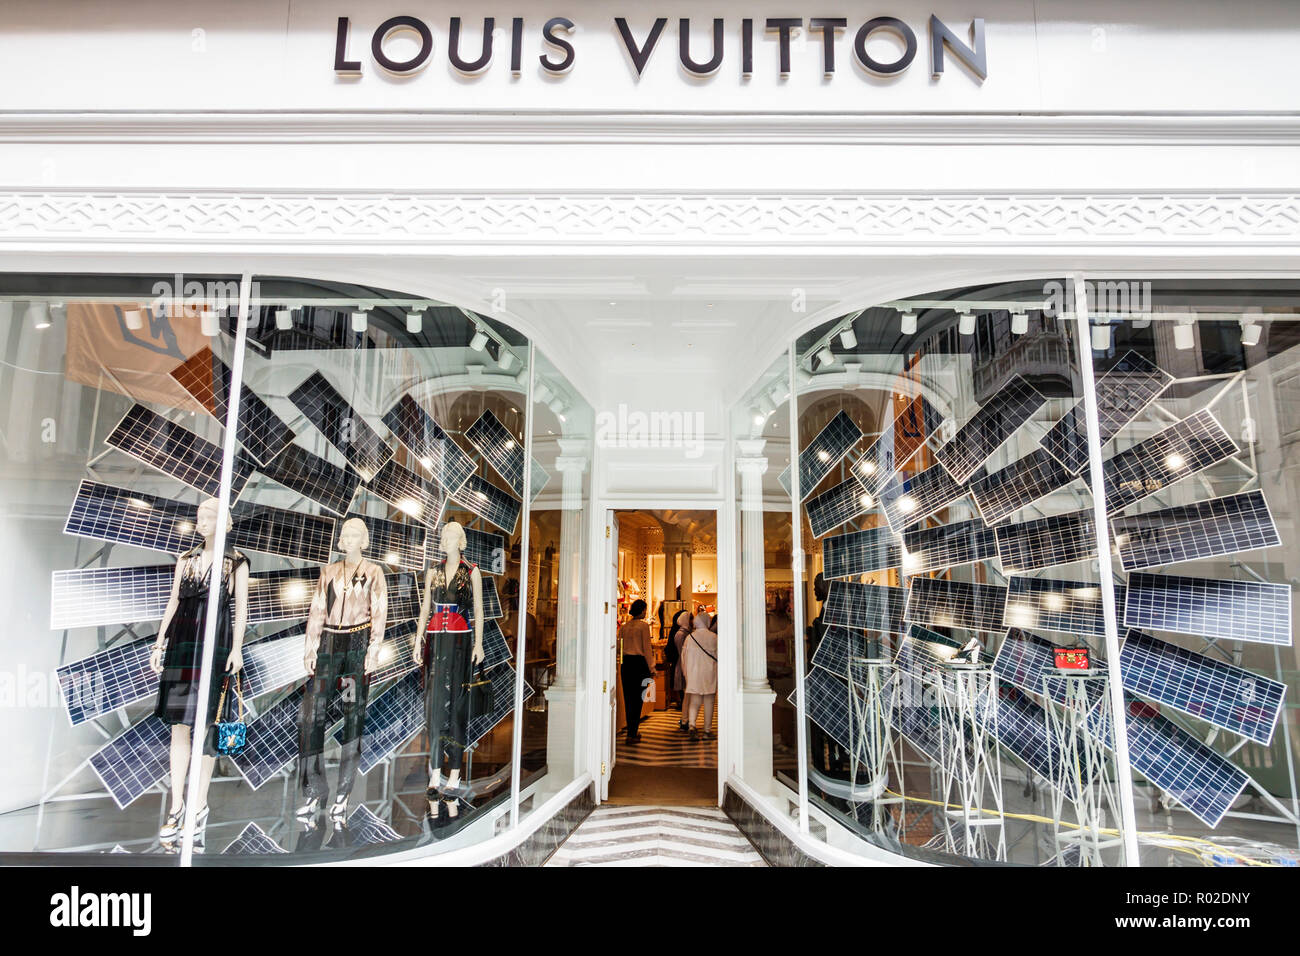 Vuitton England Shopping | SEMA Data Co-op